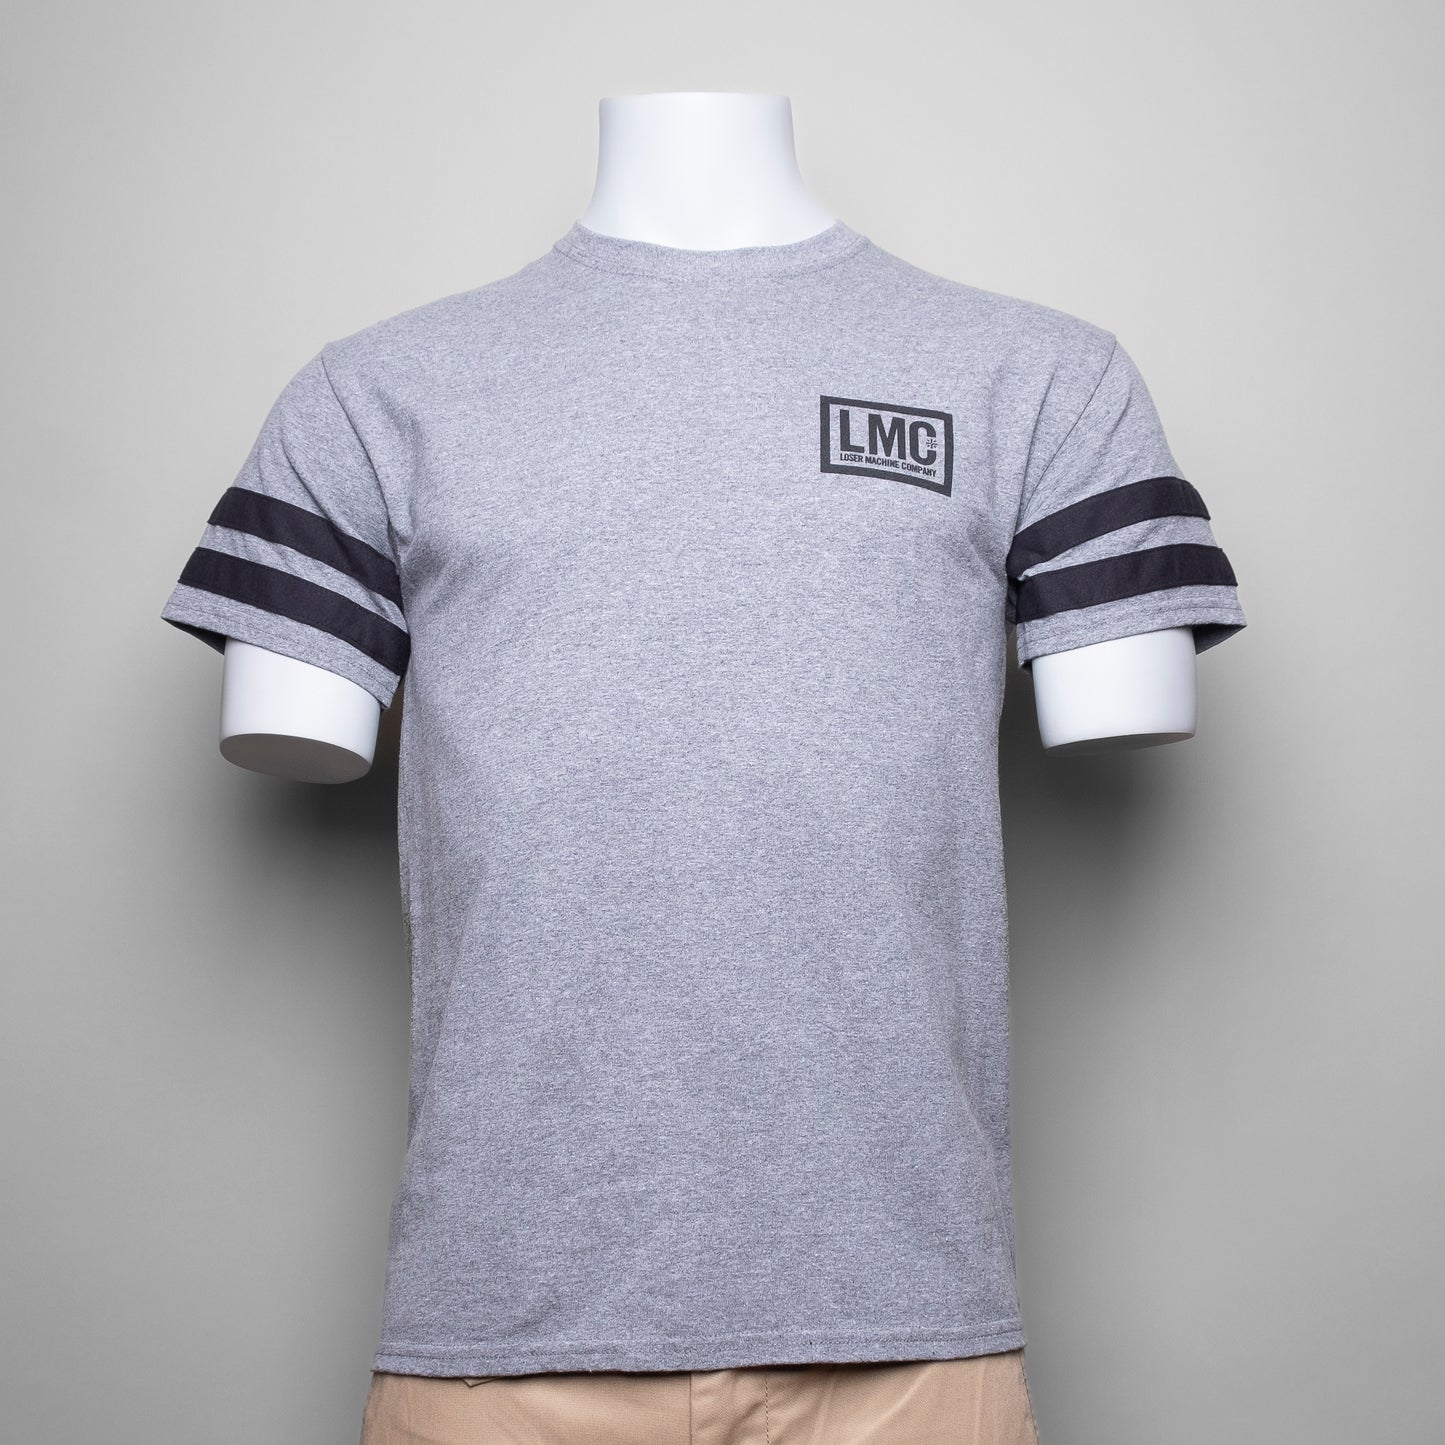 Das "LOSER MACHINE - DON'T CLOWN" T-Shirt ist in dieser Saison ein absolutes Must-have - angefangen beim neutralen Grauton, das schnell in jedes Erscheinungsbild integriert werden kann. Abgerundet wird das Design durch zwei einzigartige Aufdrucke auf der linken Brusthöhe sowie auf dem Rücken des Shirts. Hergestellt aus 100% Baumwolle, bietet das T-Shirt einen bequemen und modernen Look.